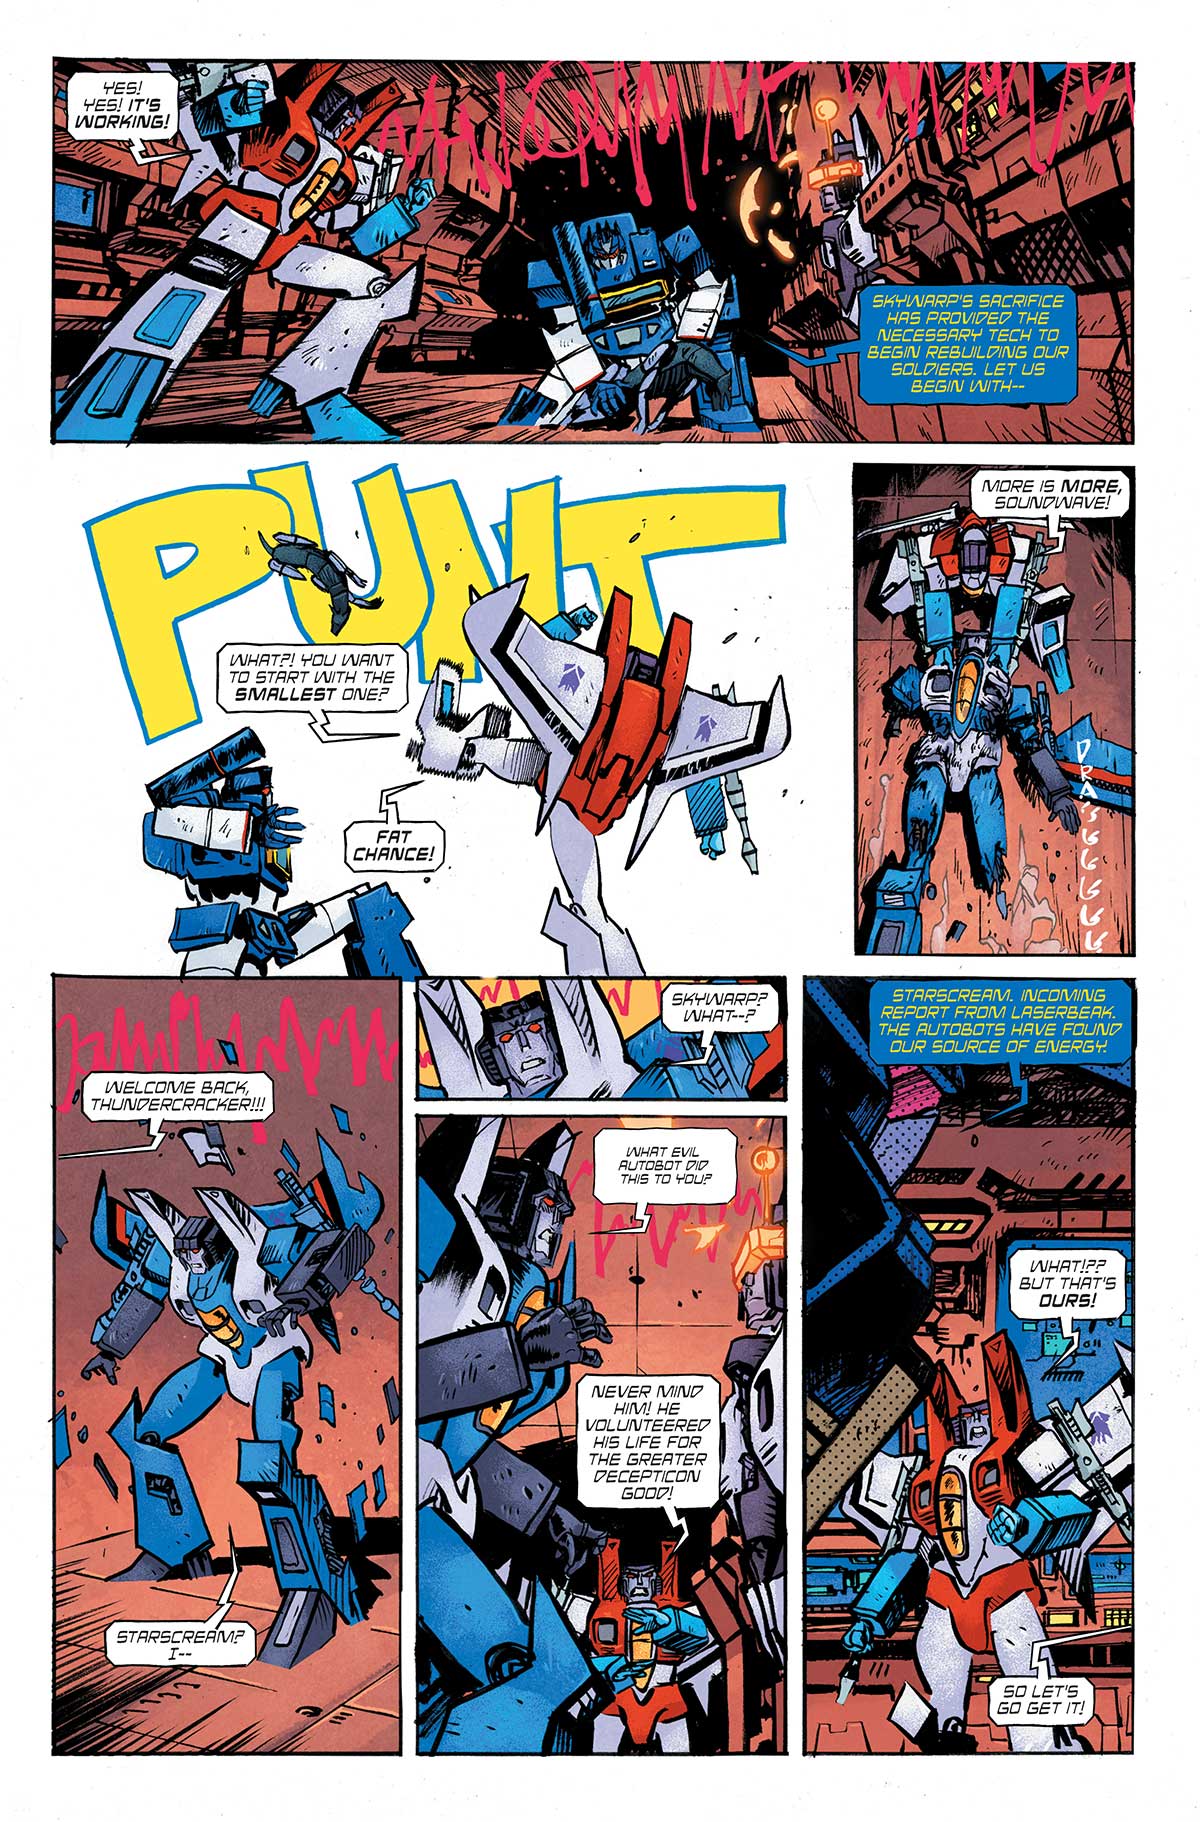 Oldalak a következőből: Transformers #5